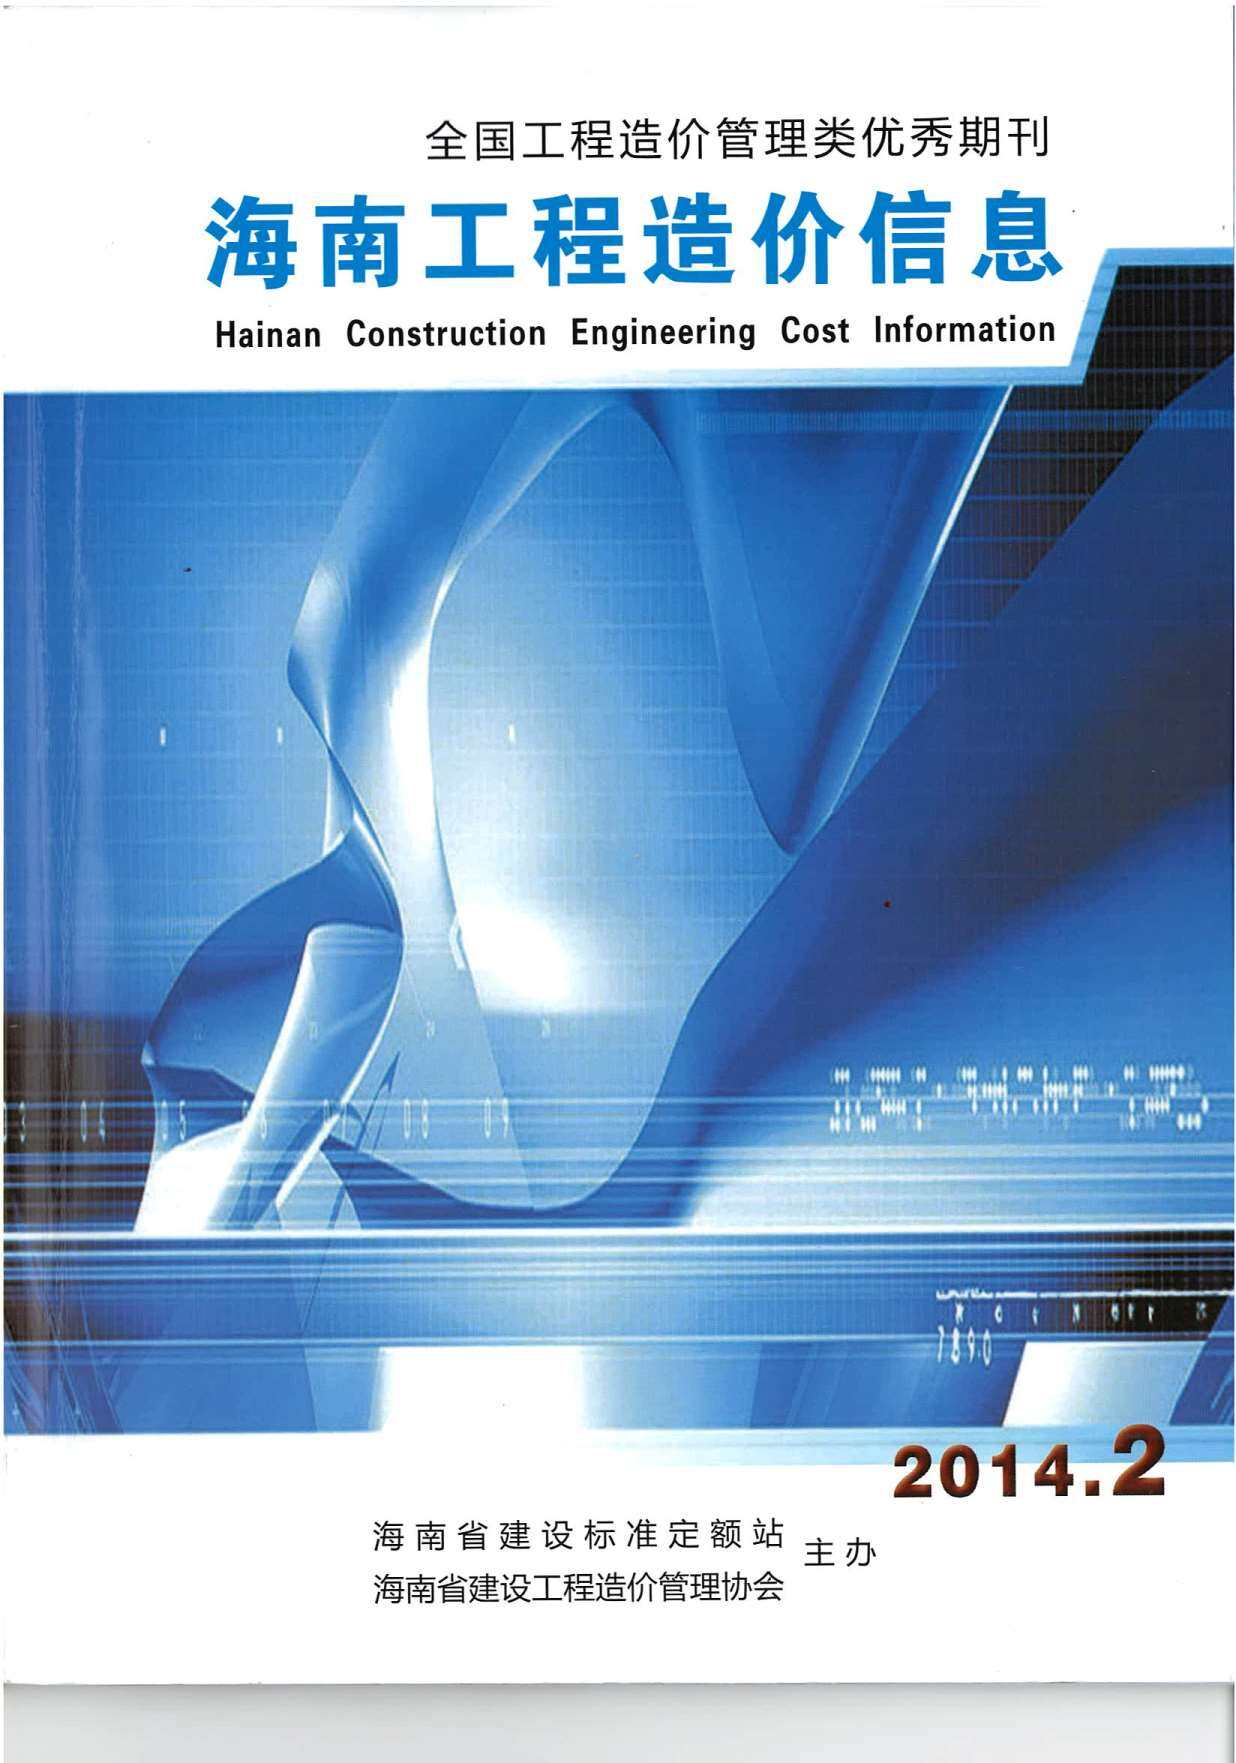 海南省2014年2月工程造价信息期刊